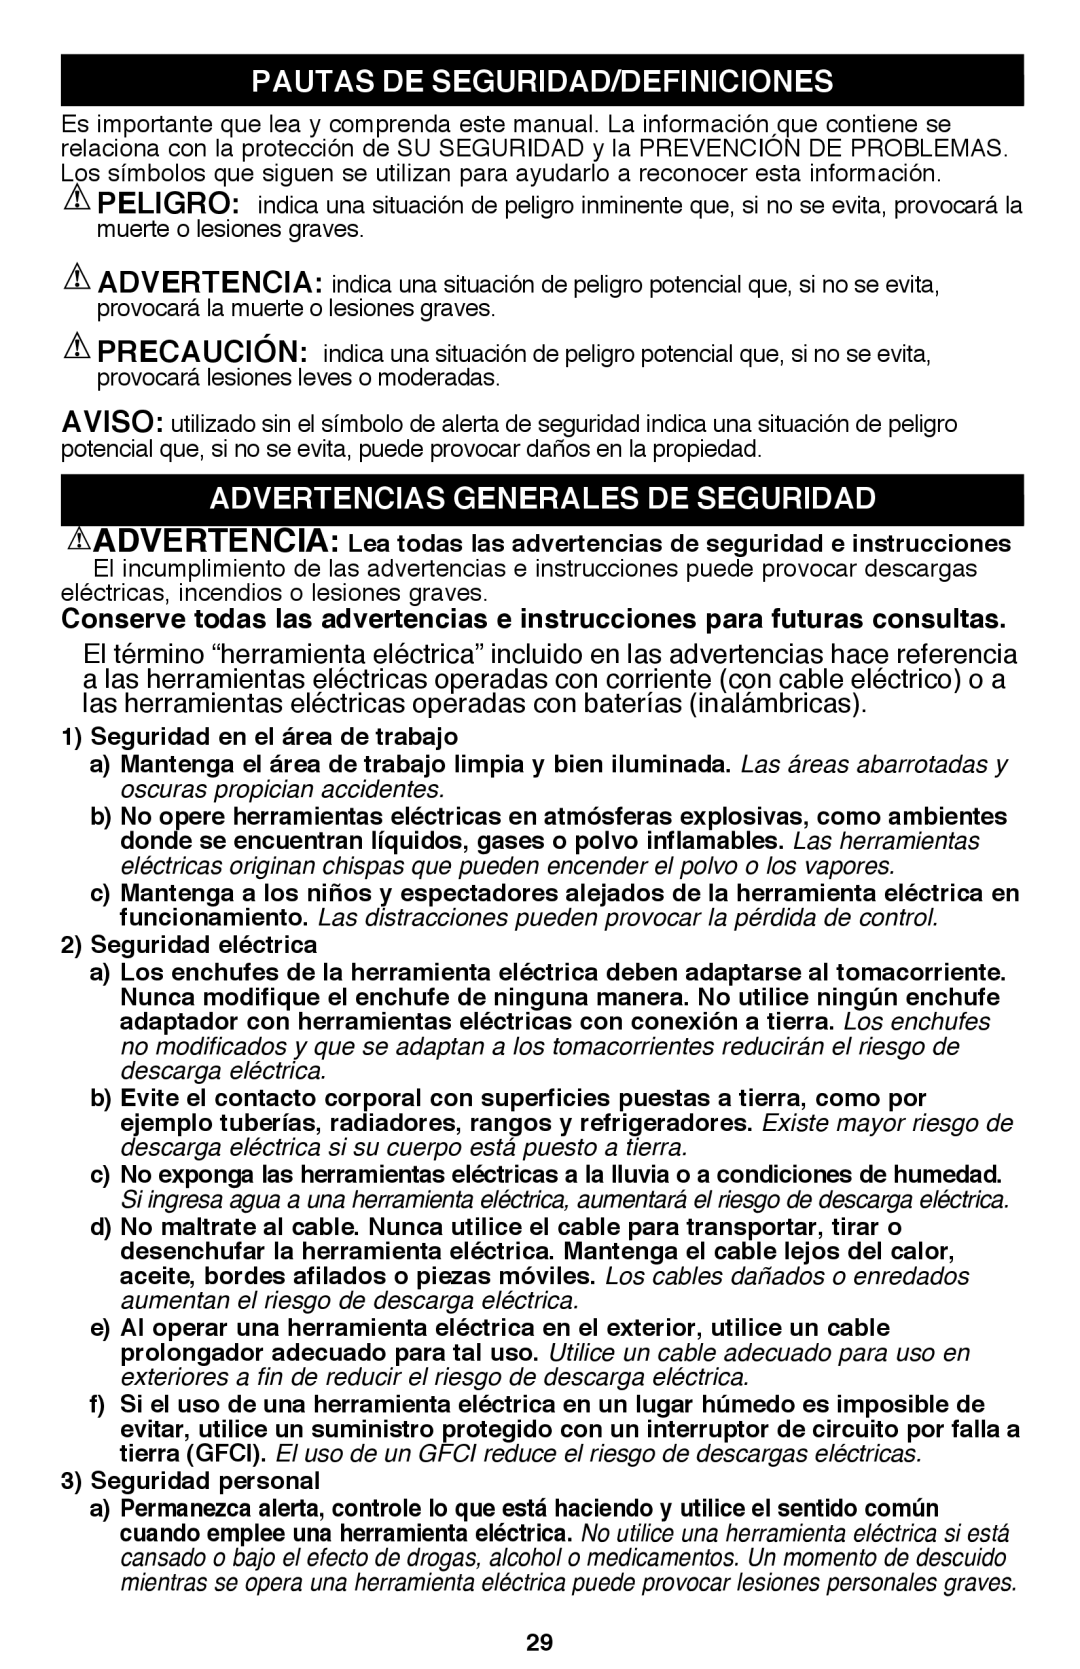 Black & Decker PSL12 instruction manual Pautas De Seguridad/Definiciones, Advertencias generales de seguridad 